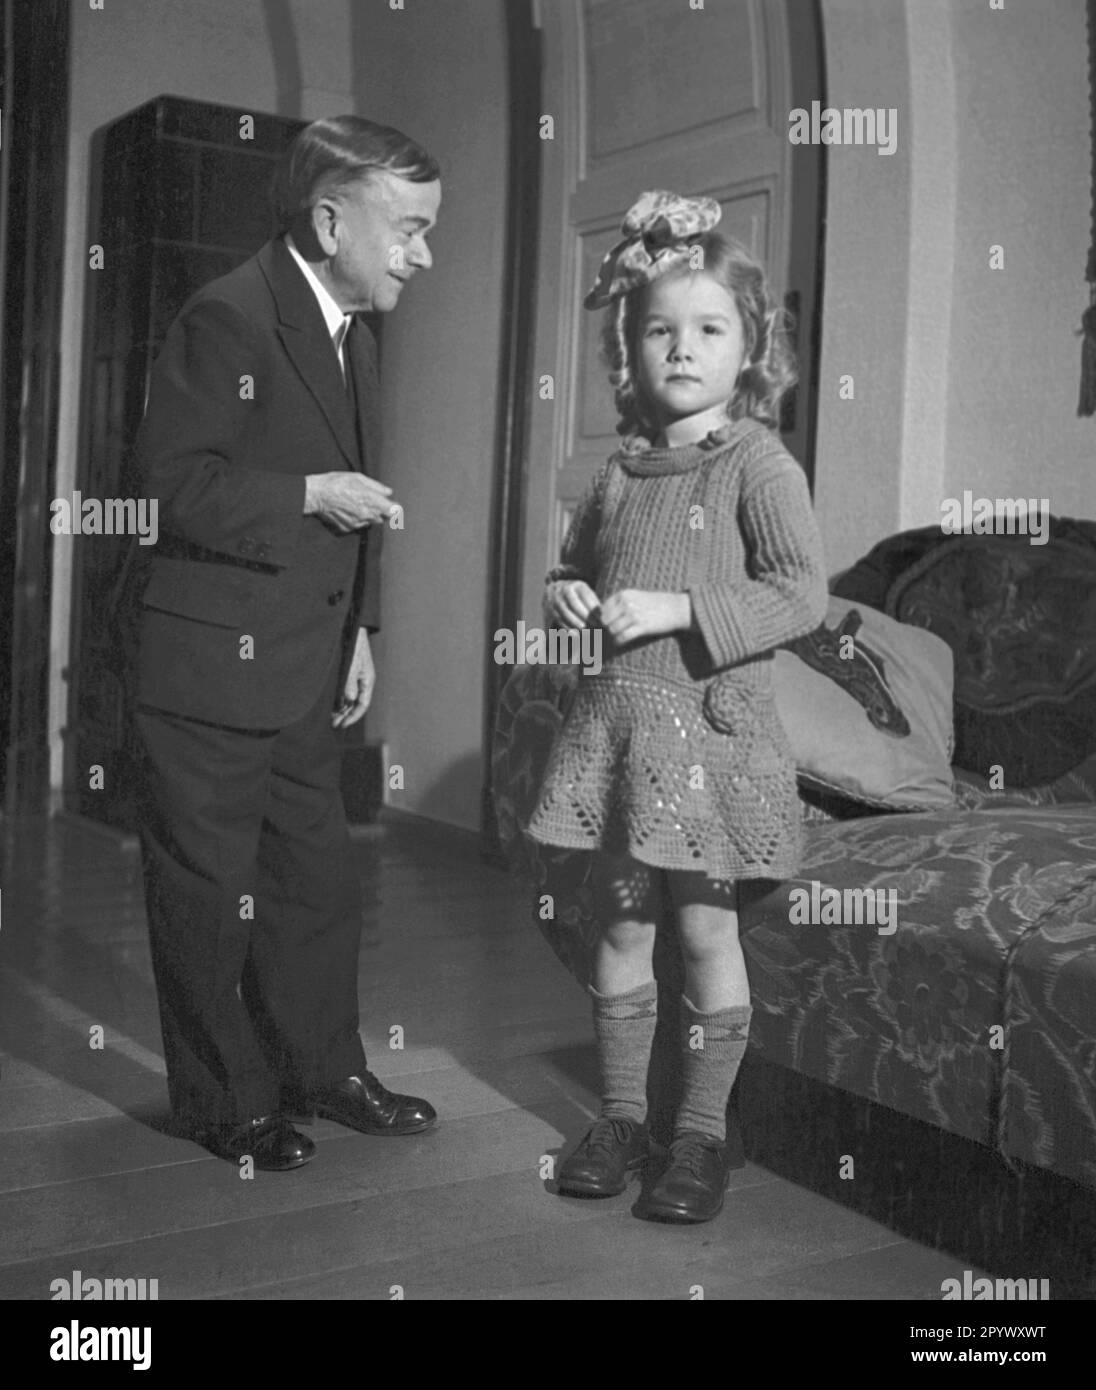 Ein kleiner Mann und ein Mädchen, wahrscheinlich seine Tochter, posieren für ein Familienfoto. Stockfoto